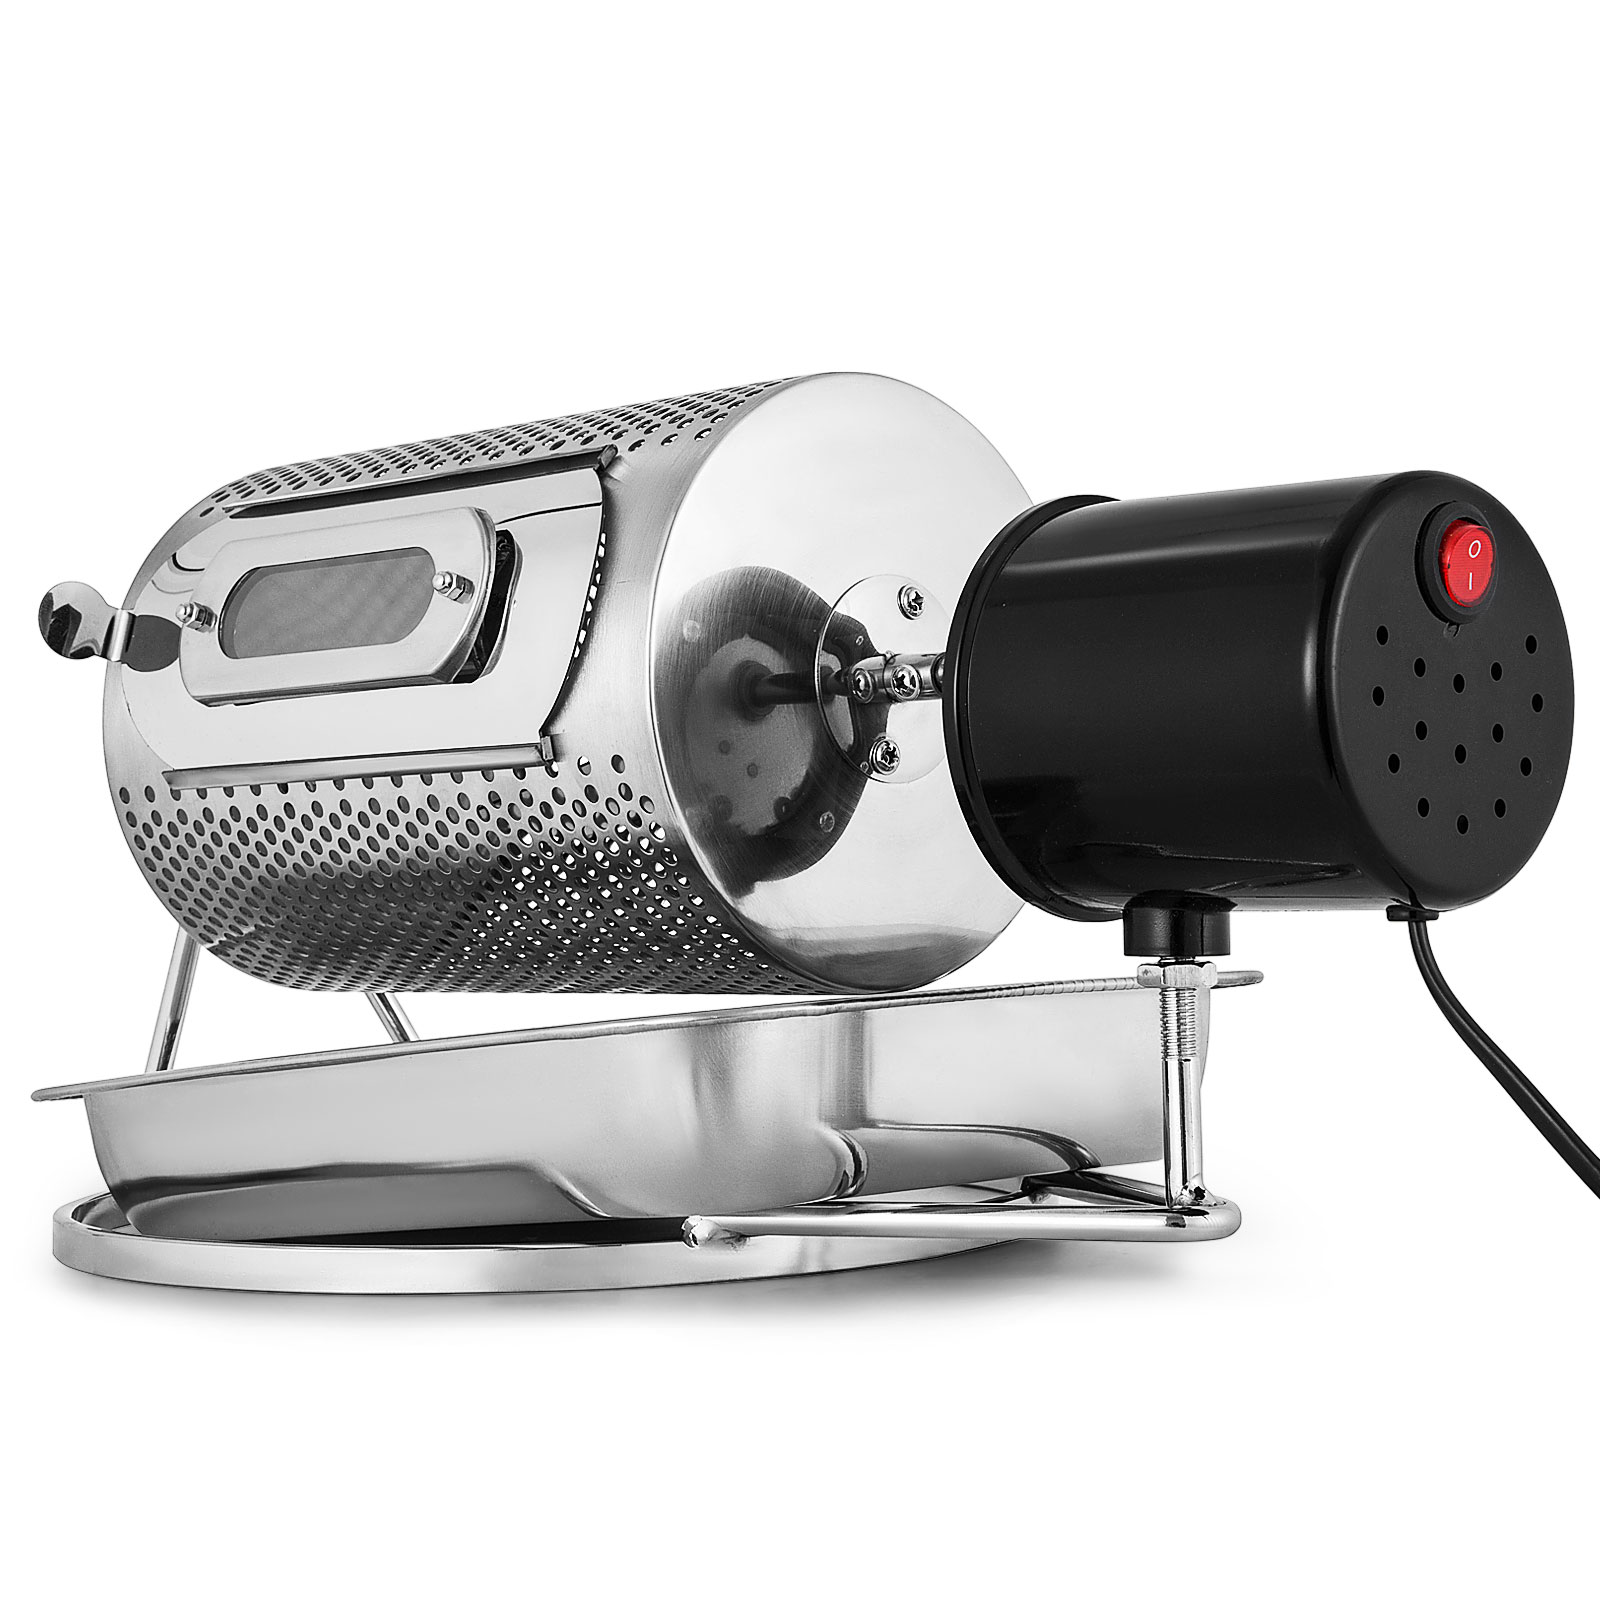 Kaffee Röster/Küchengerät Maschine &Latte Art Drucker/Barista Kaffee Drucker 